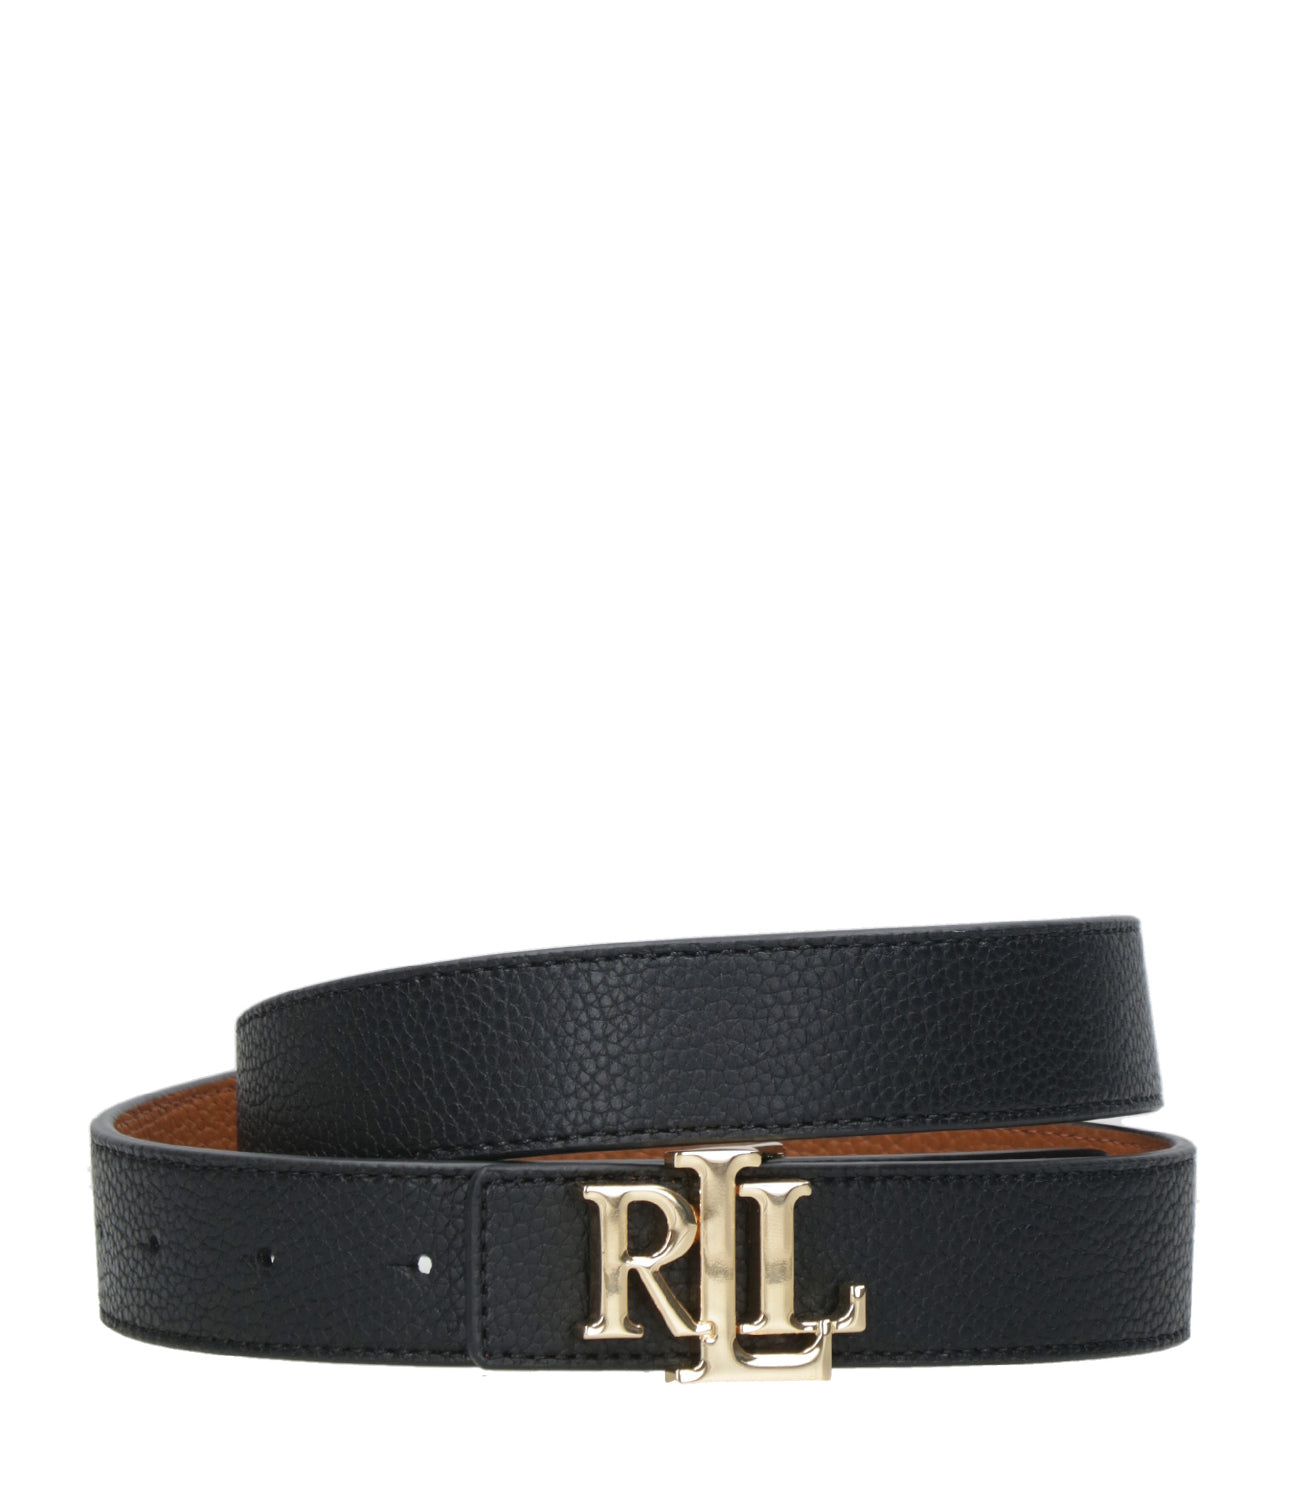 Lauren Ralph Lauren | Black and Leather Belt